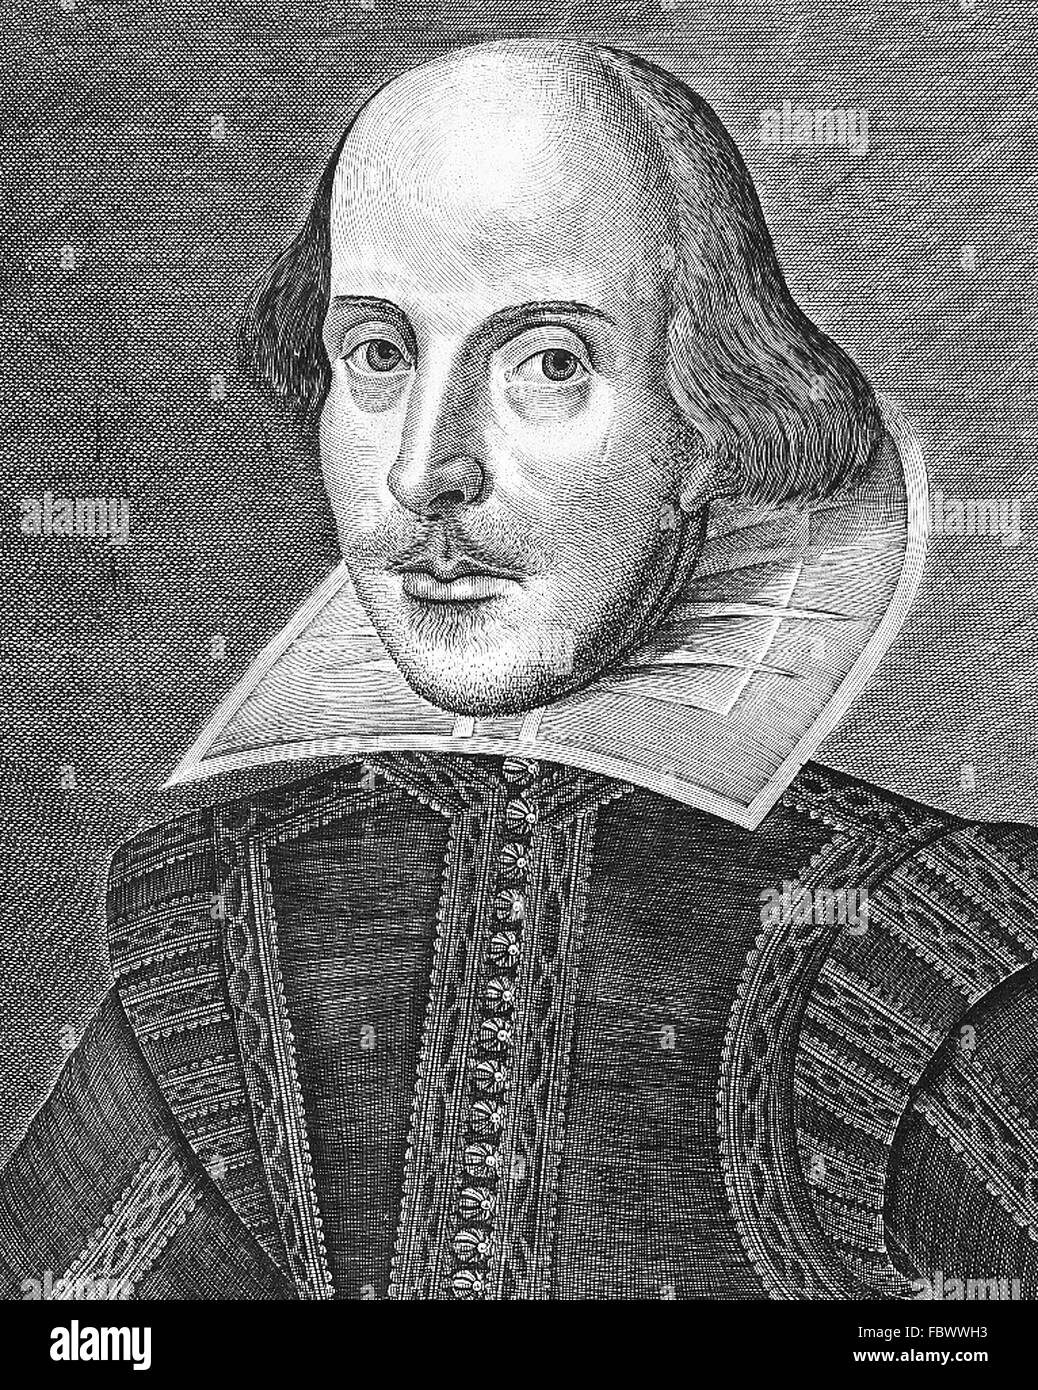 Shakespeare, Portrait. Gravure sur cuivre de William Shakespeare par Martin Droeshout à partir de la page de titre du premier Folio, publié en 1623 Banque D'Images